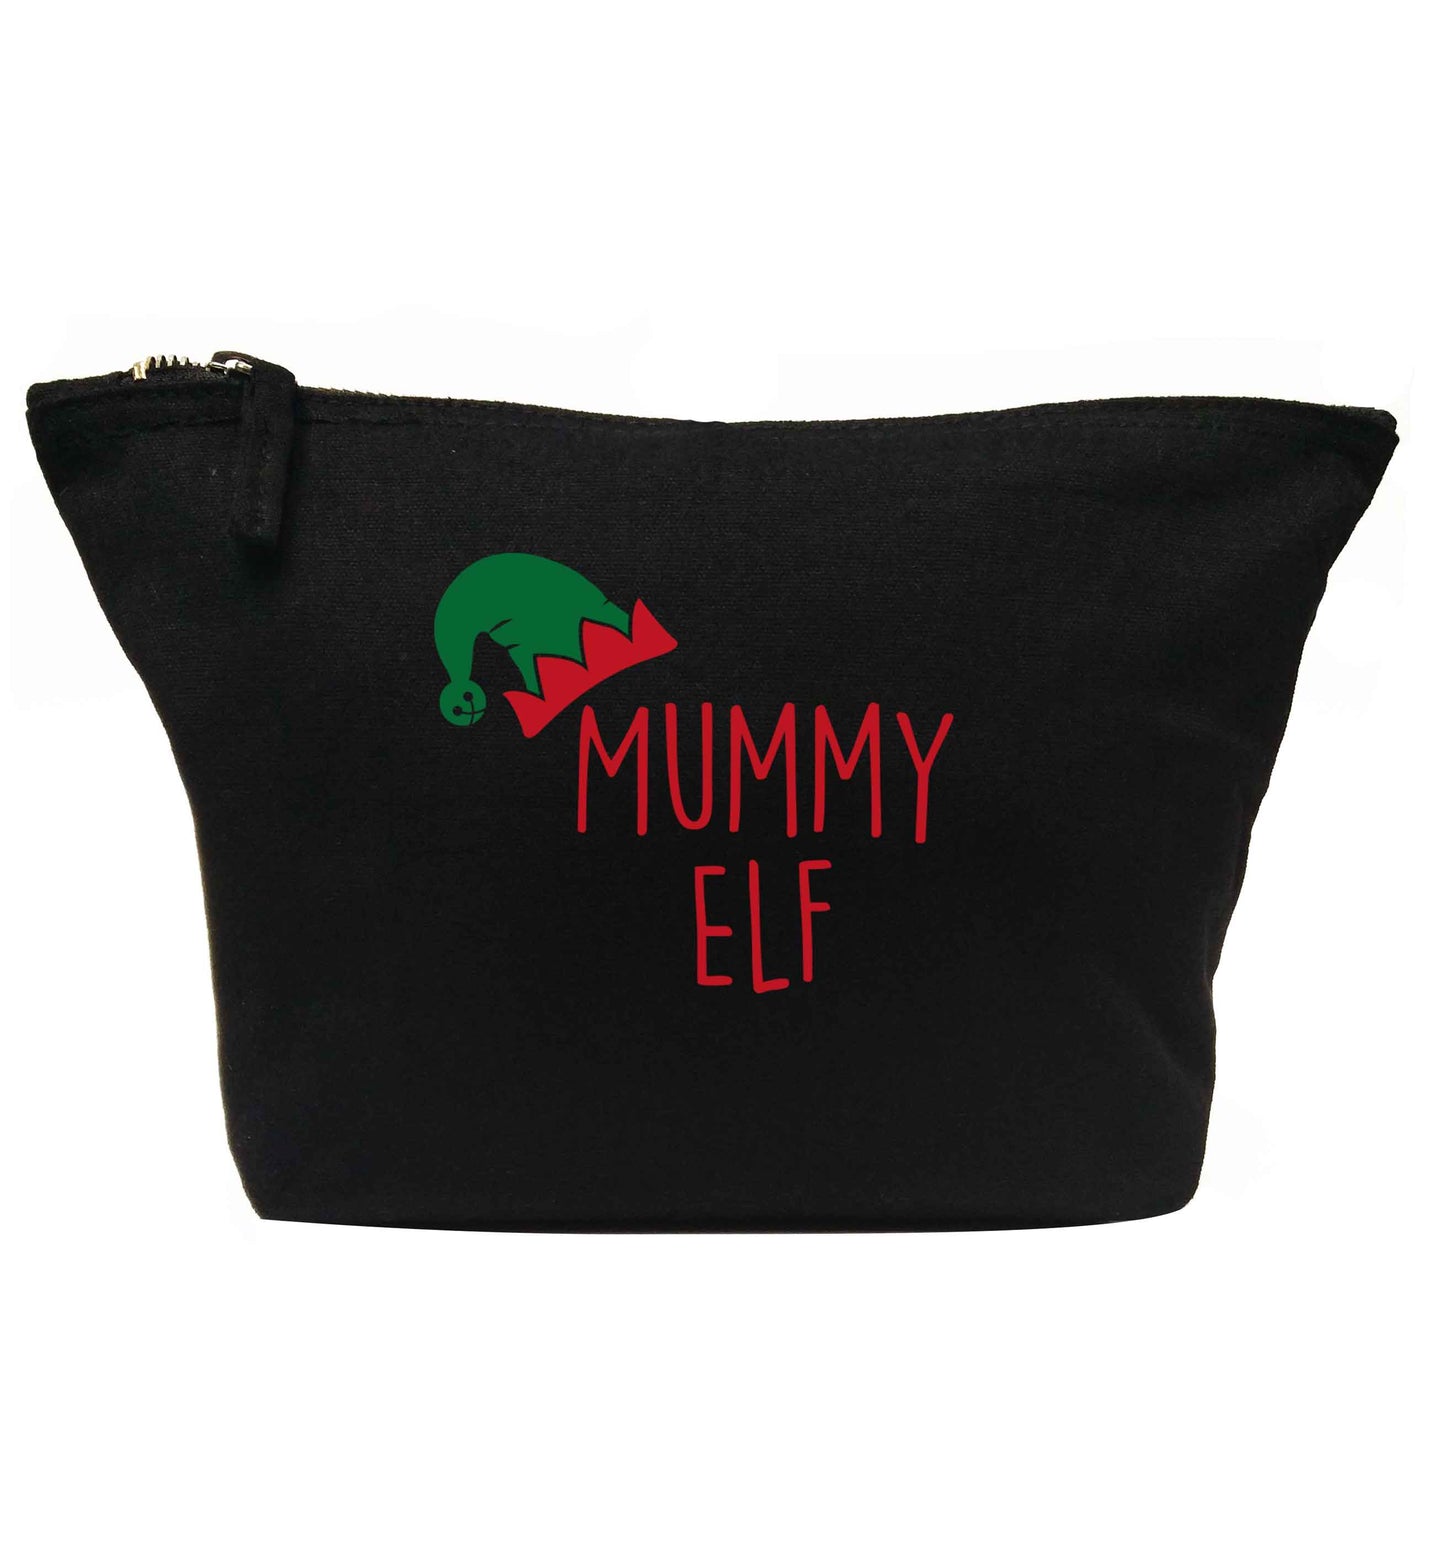 Mummy elf | Makeup / wash bag